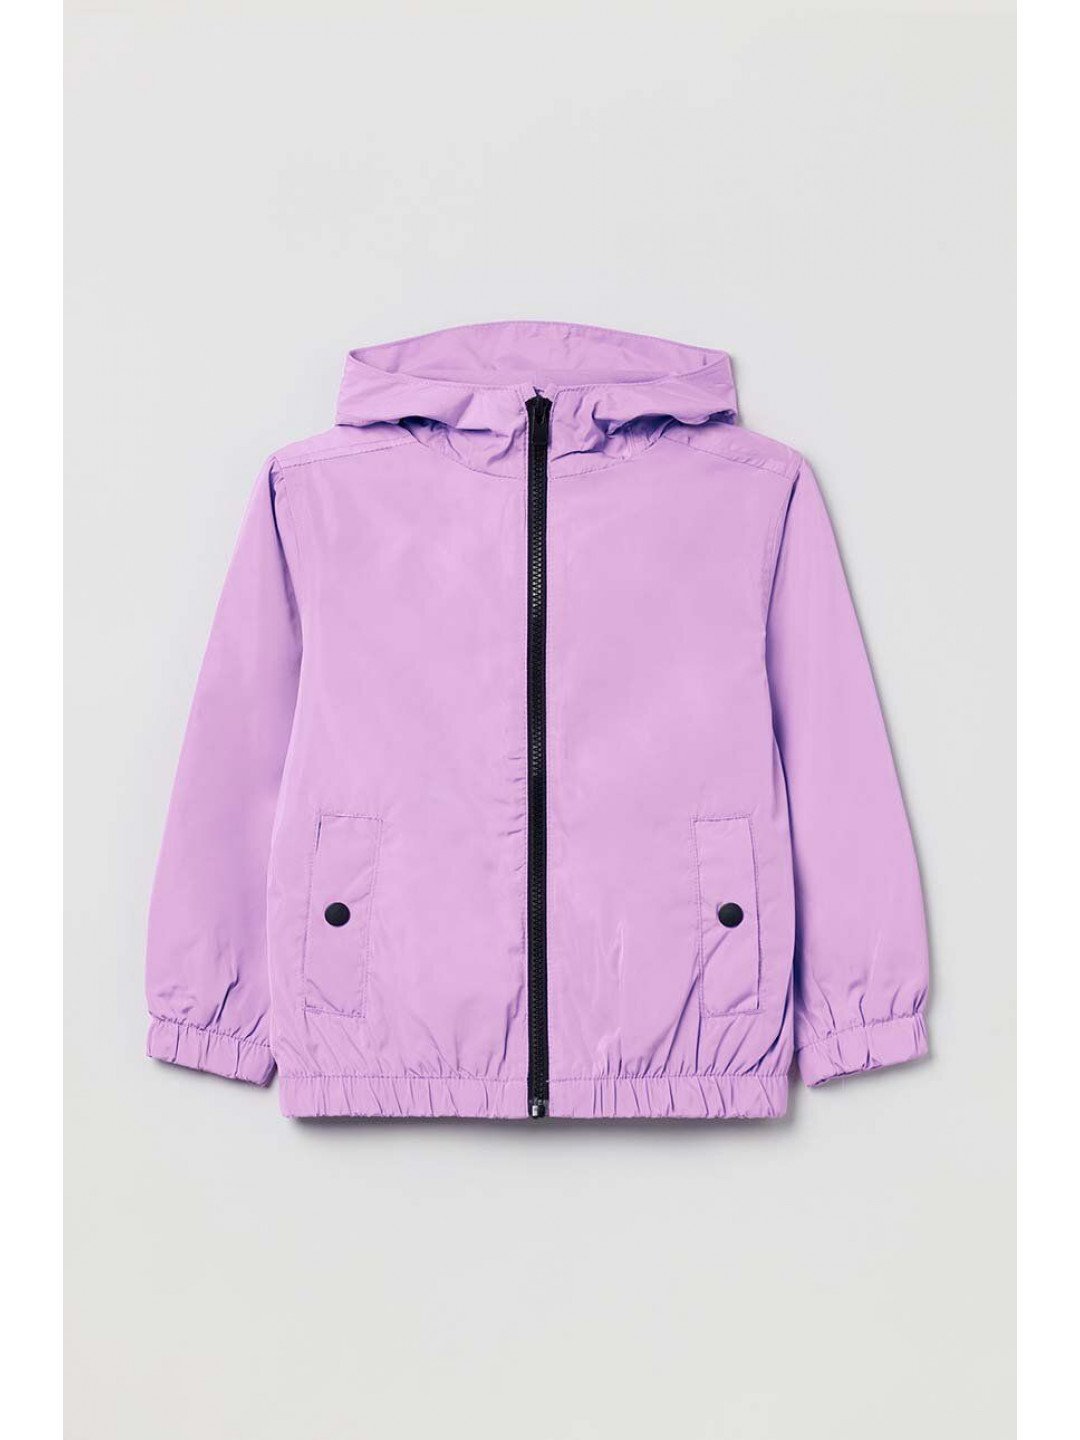 Dětská bunda OVS fialová barva